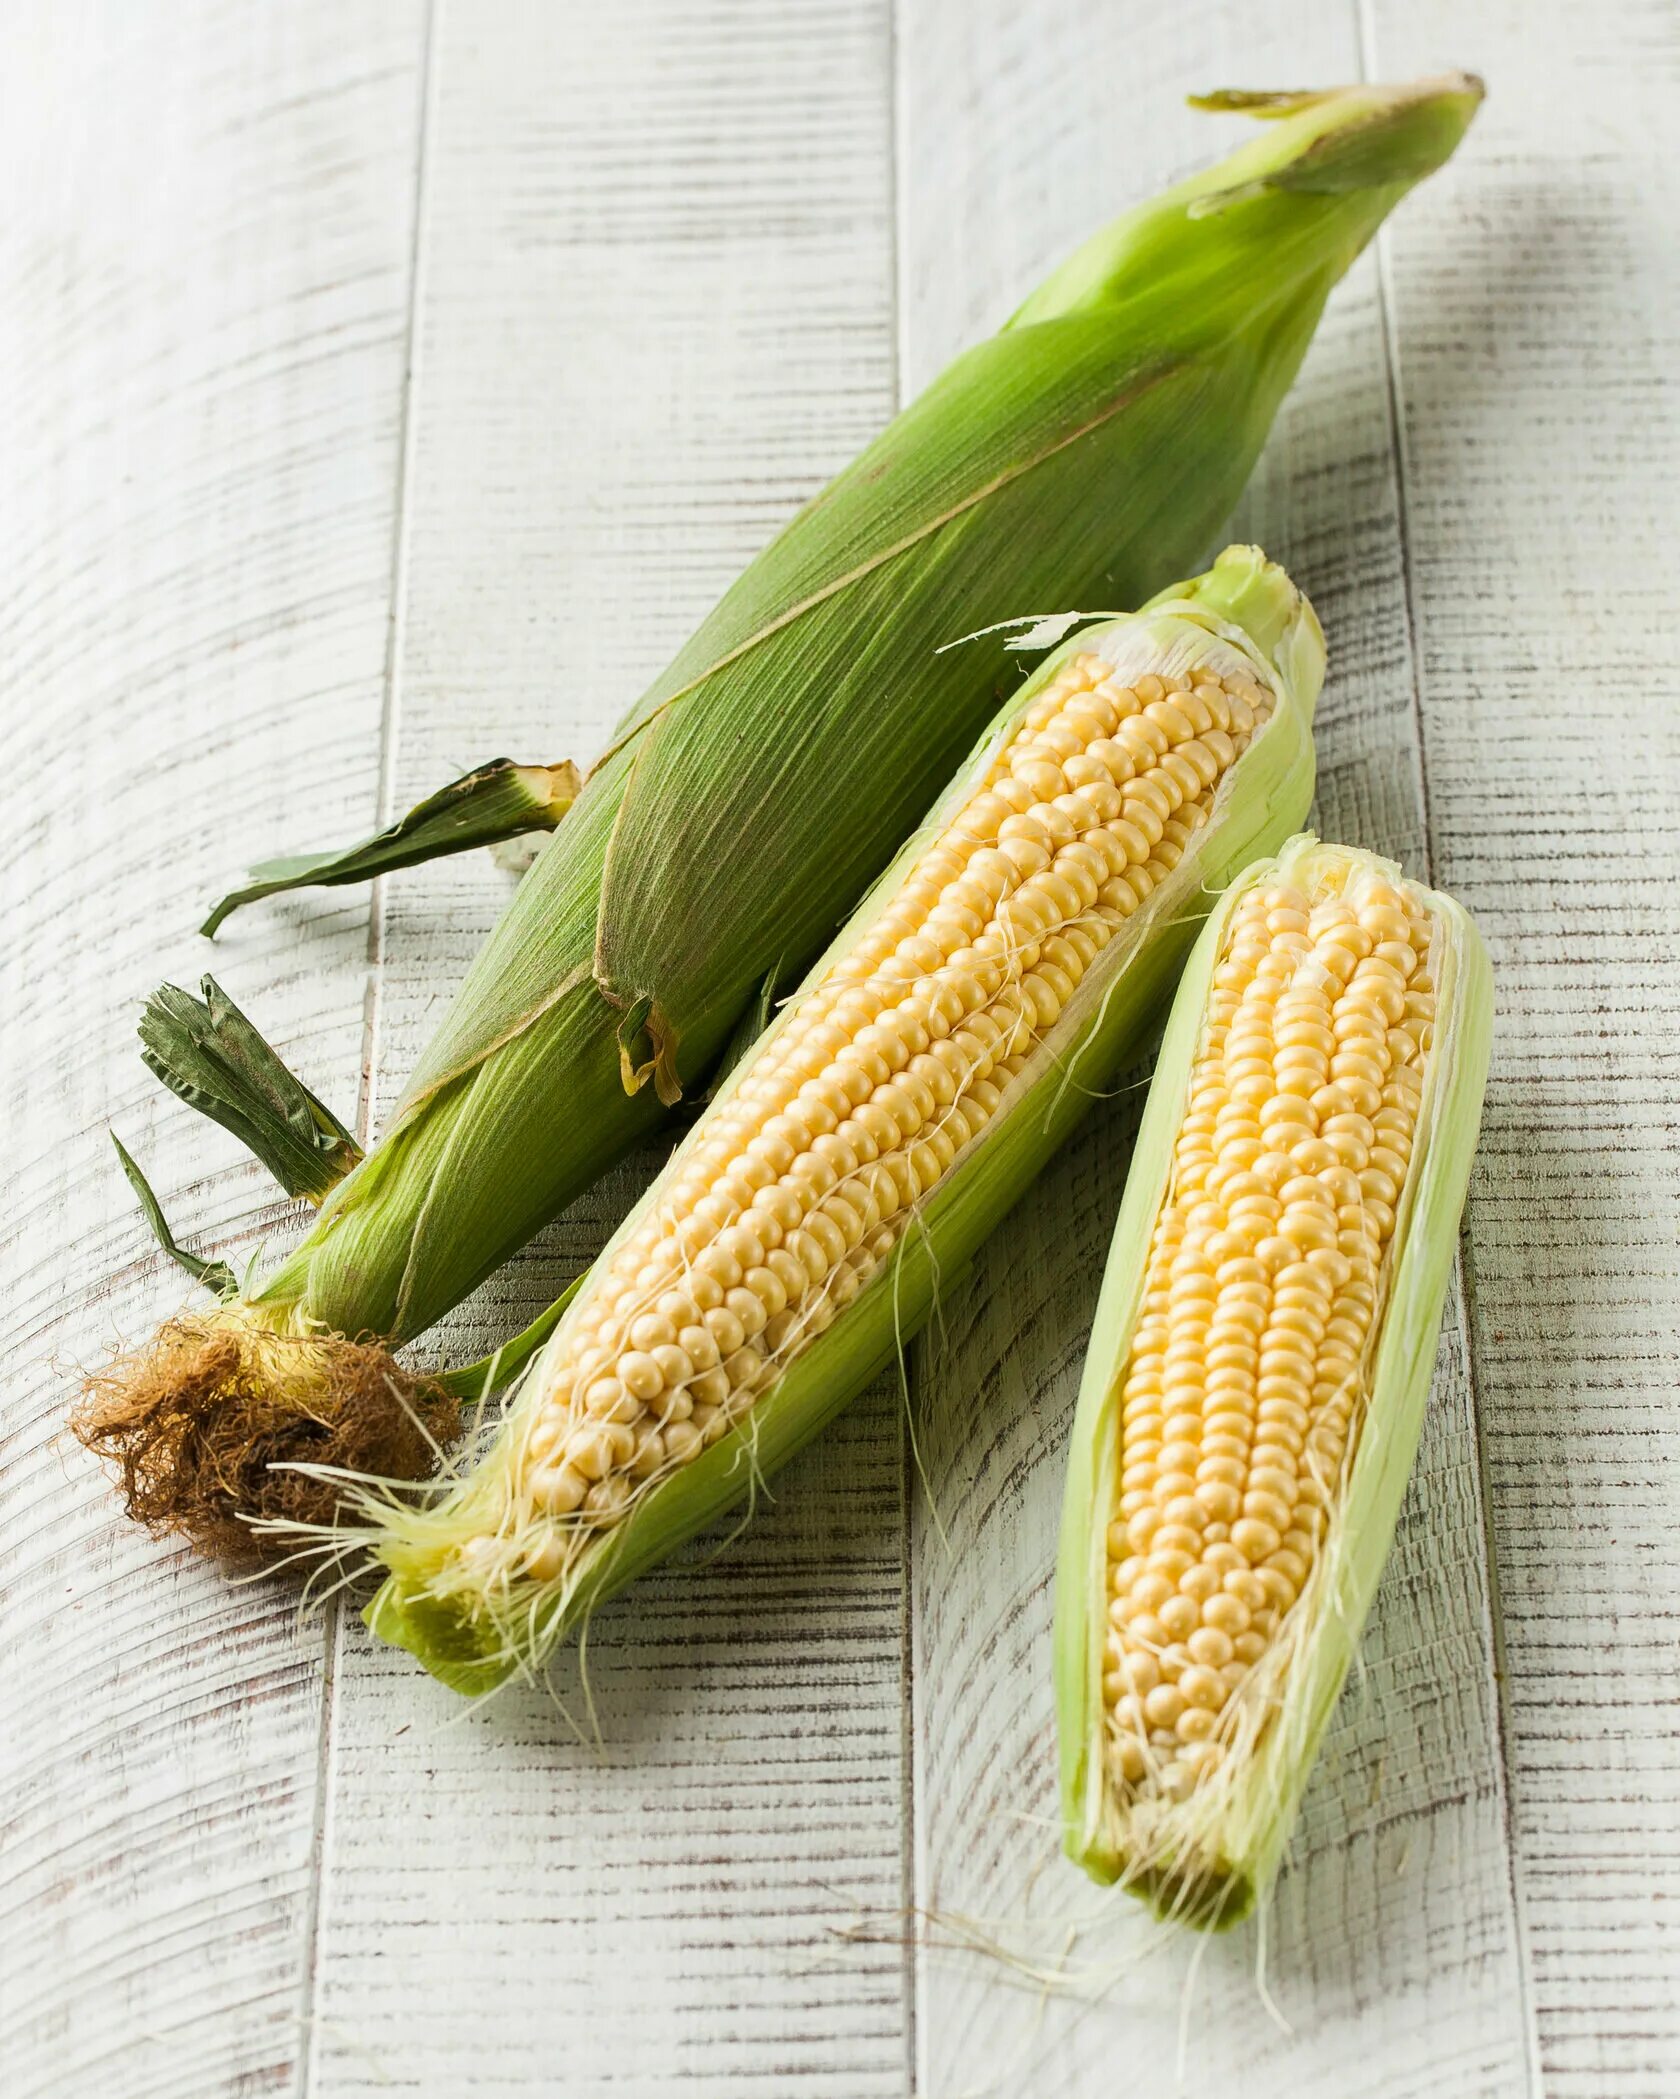 1 початок. Кукуруза початок. Кукуруза в початках купить. Сколько стоит кукуруза в початках. Кукурузные початки купить.